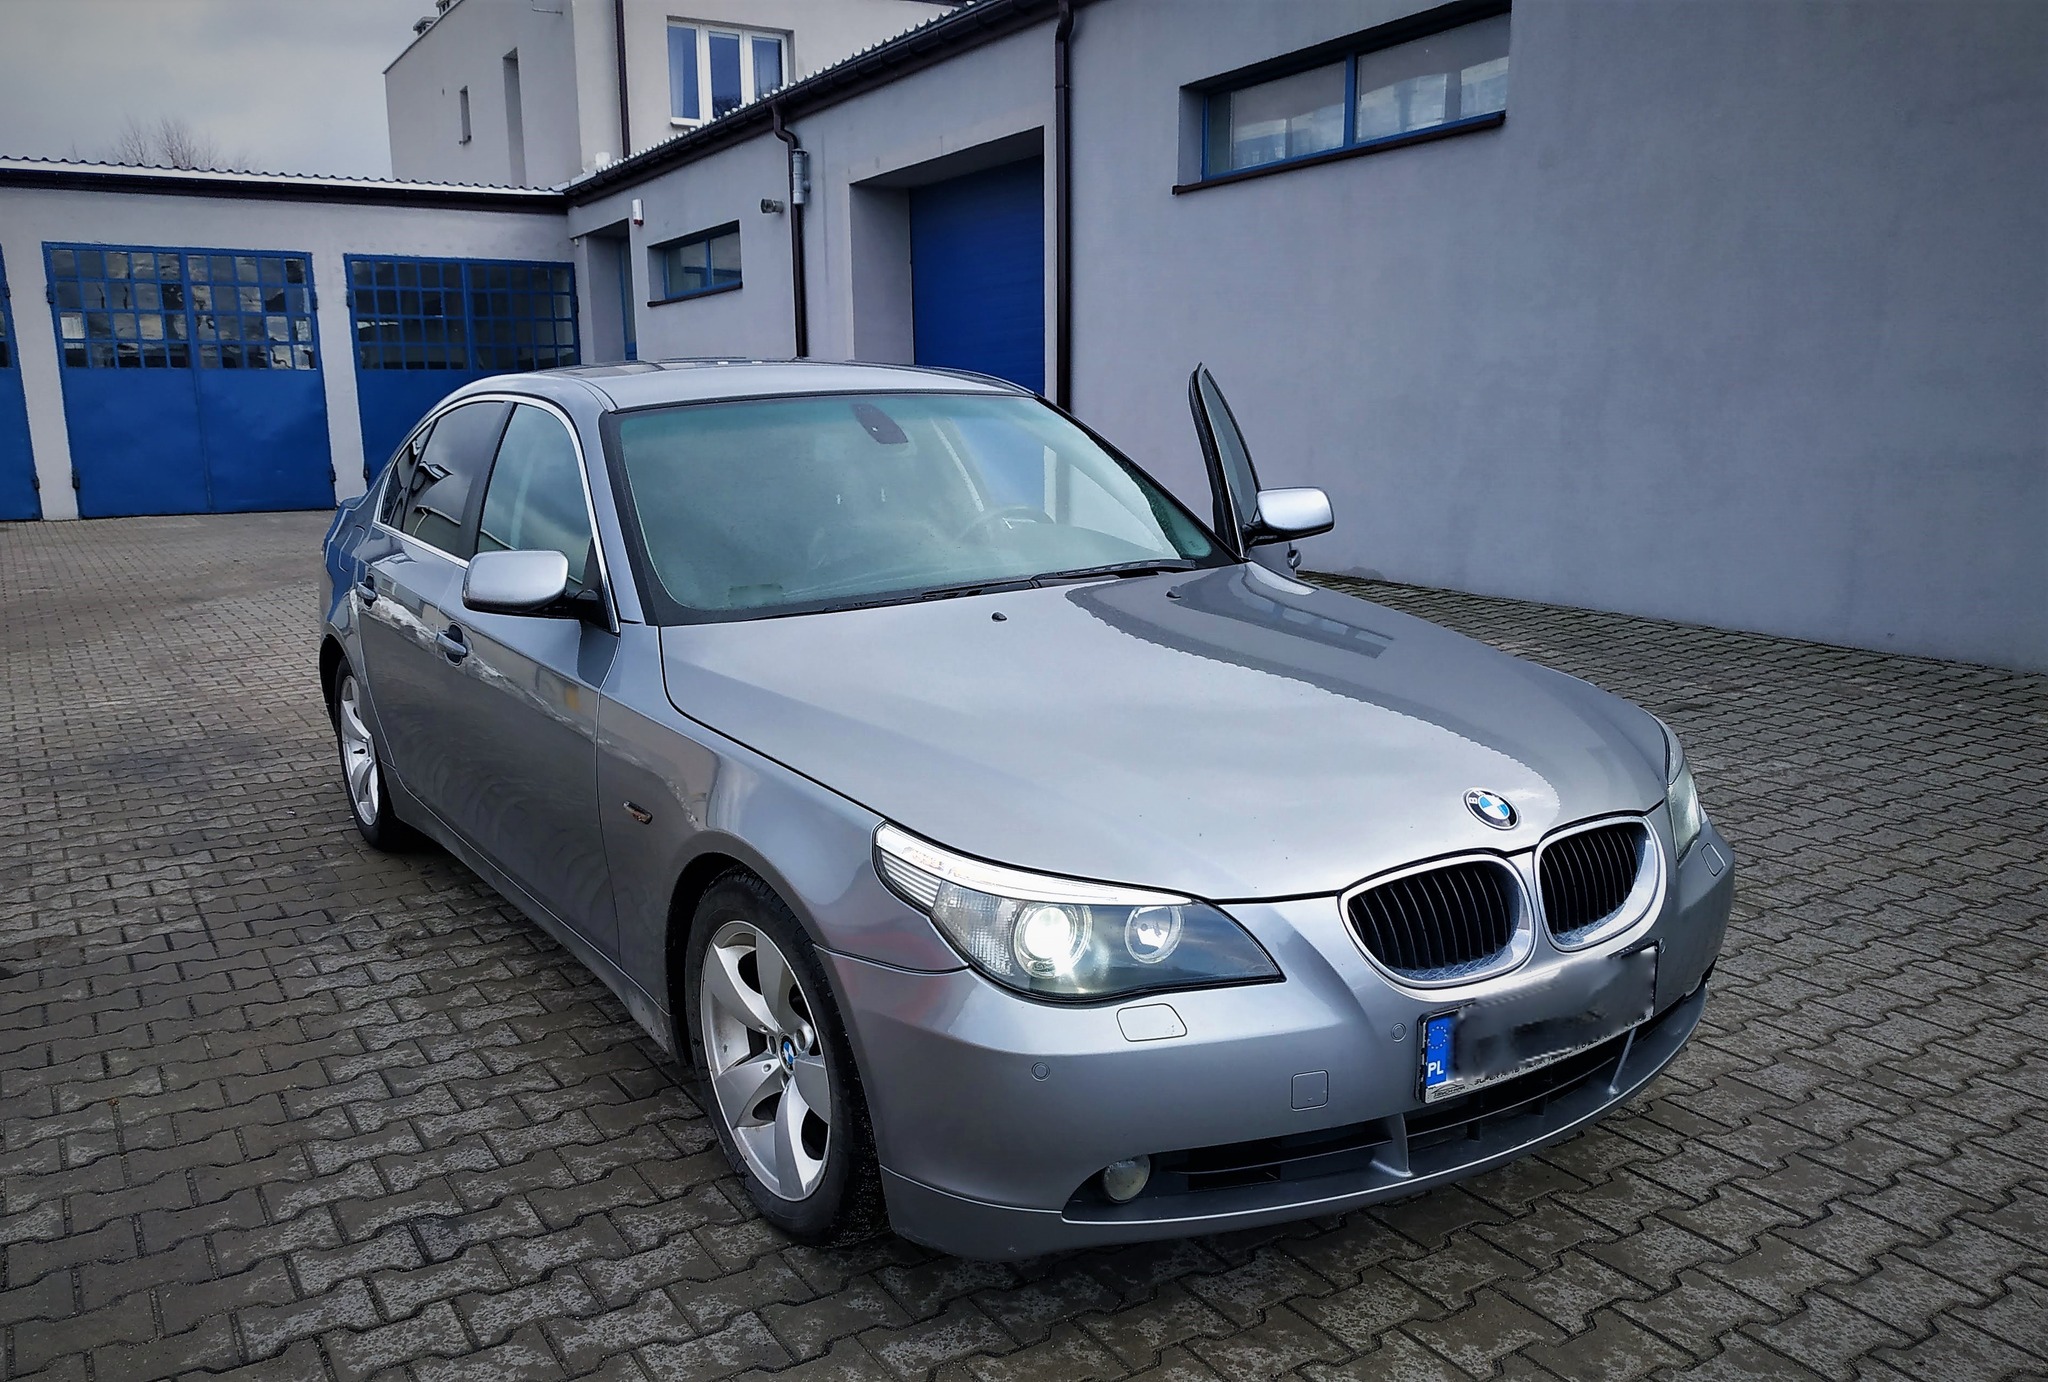 BMW E60 530D 218KM >> 284KM 626Nm